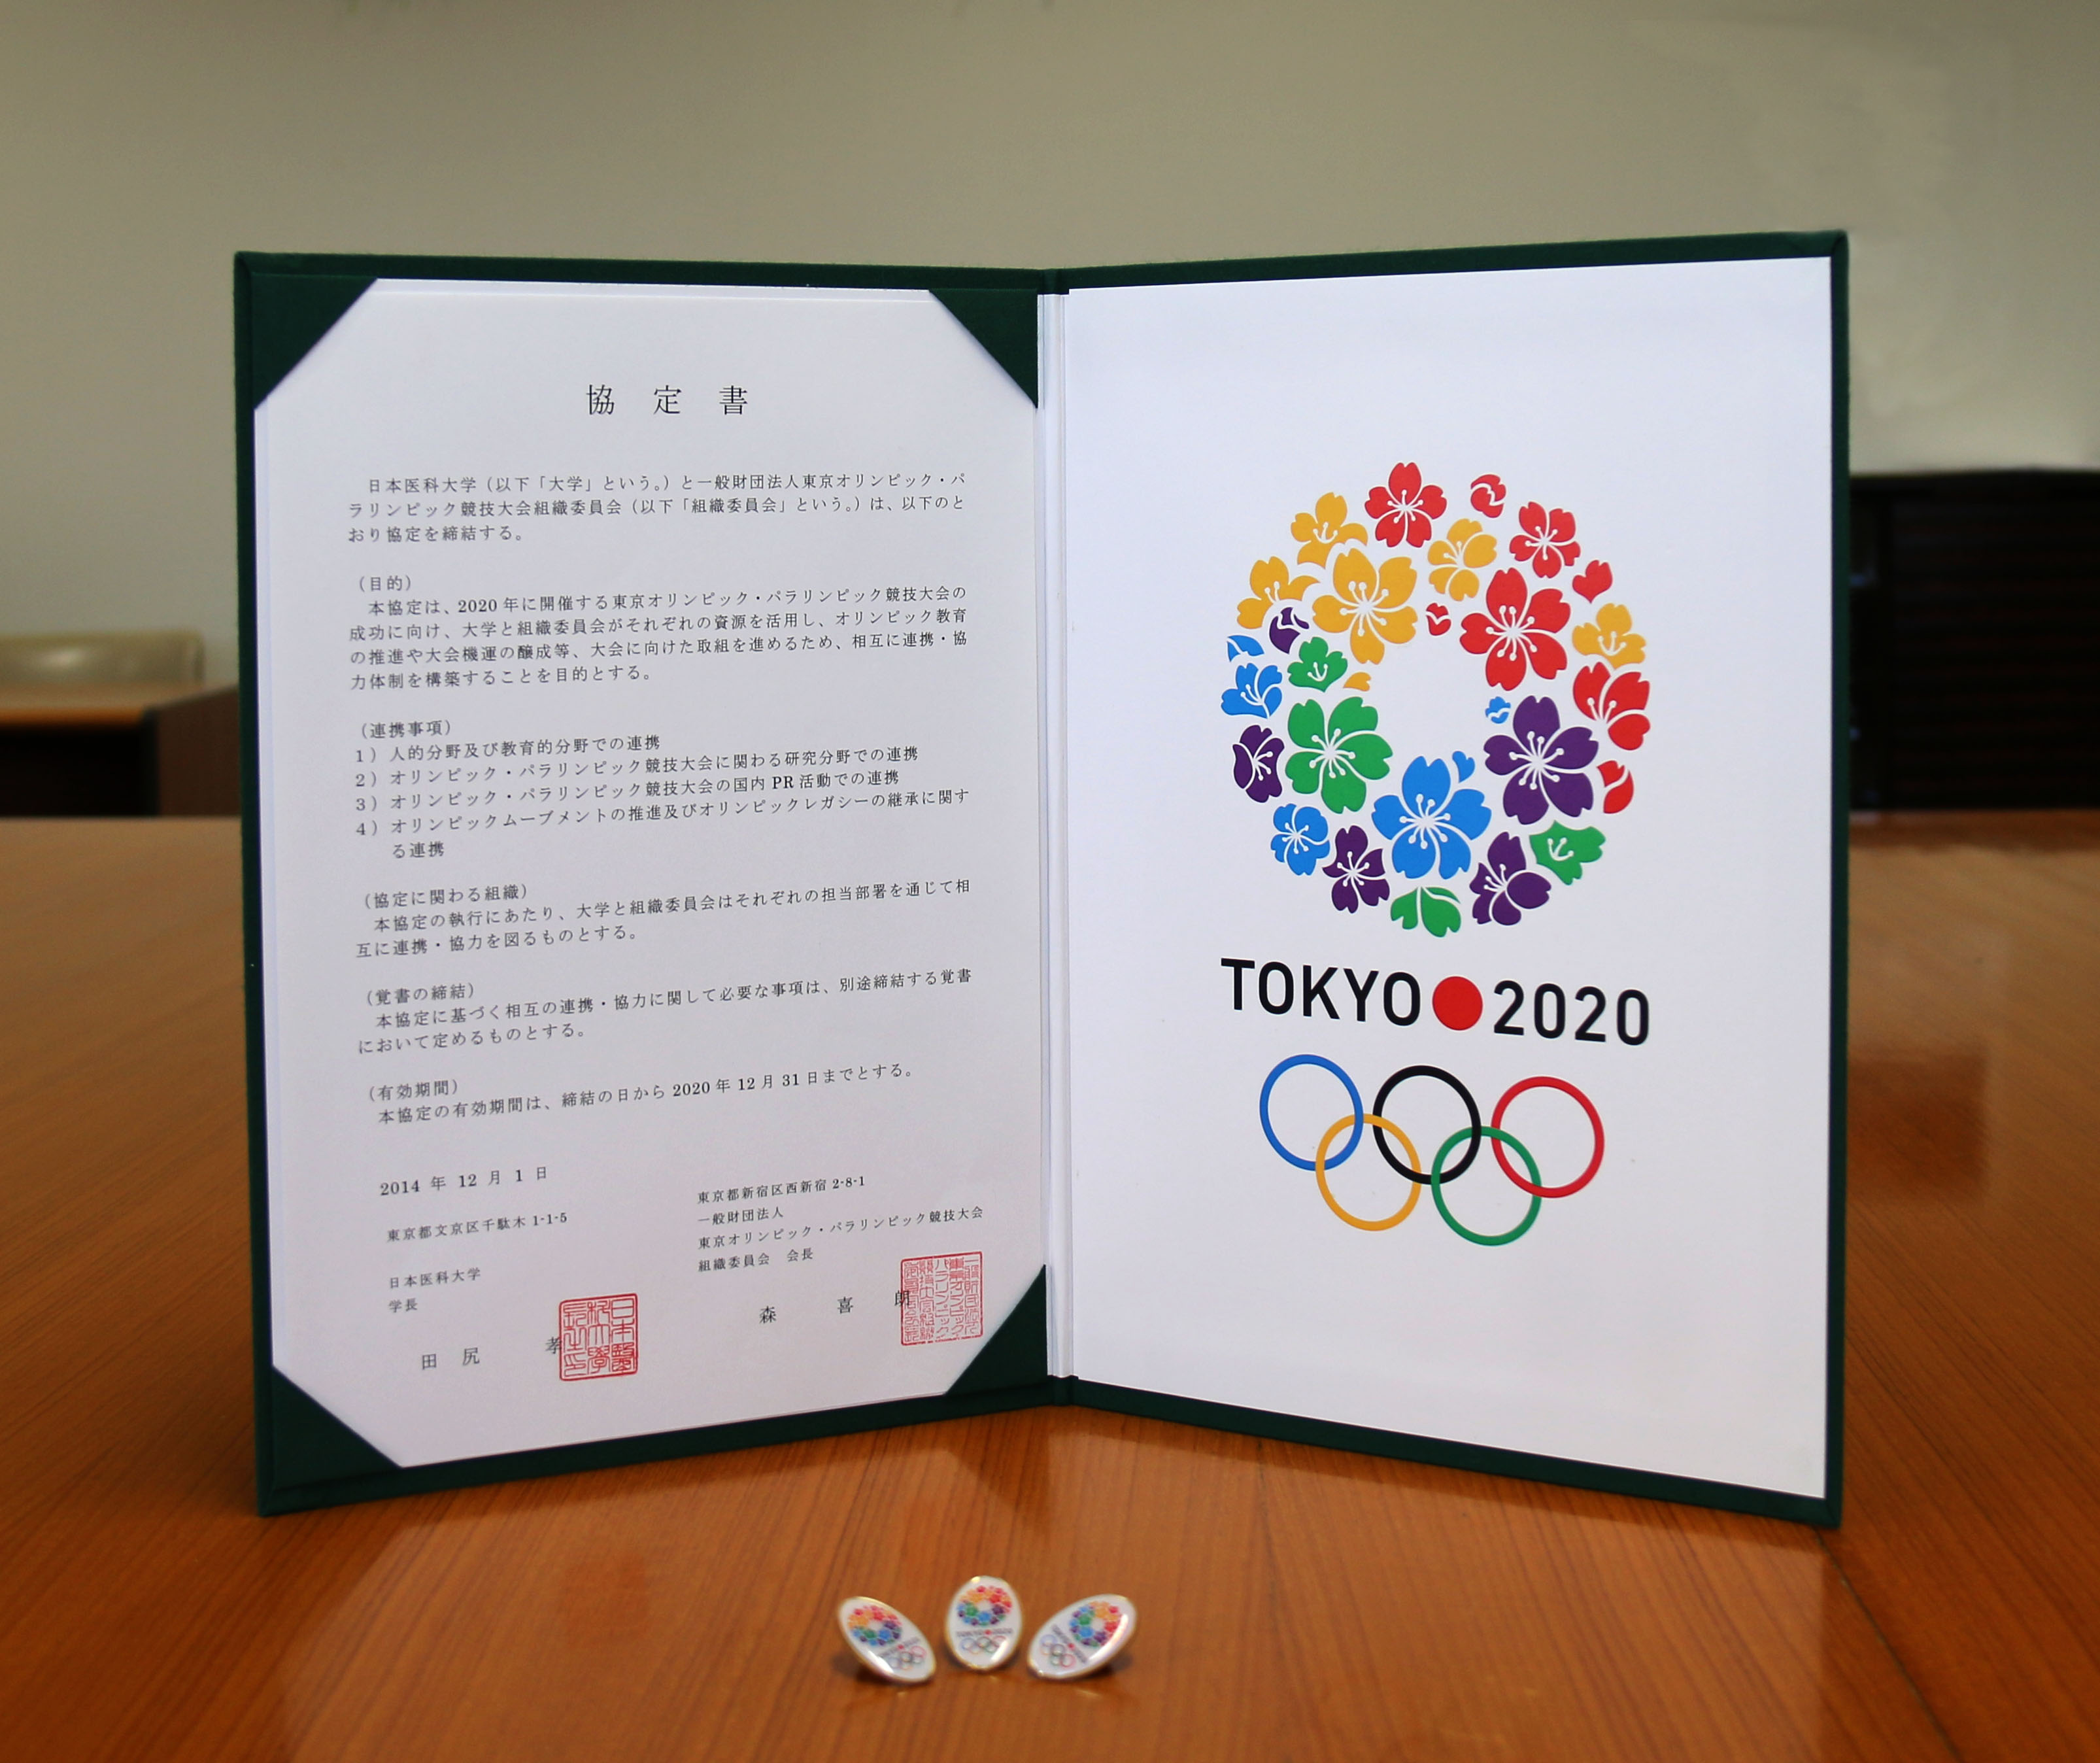 2020年東京オリンピック・パラリンピック大学連携協定